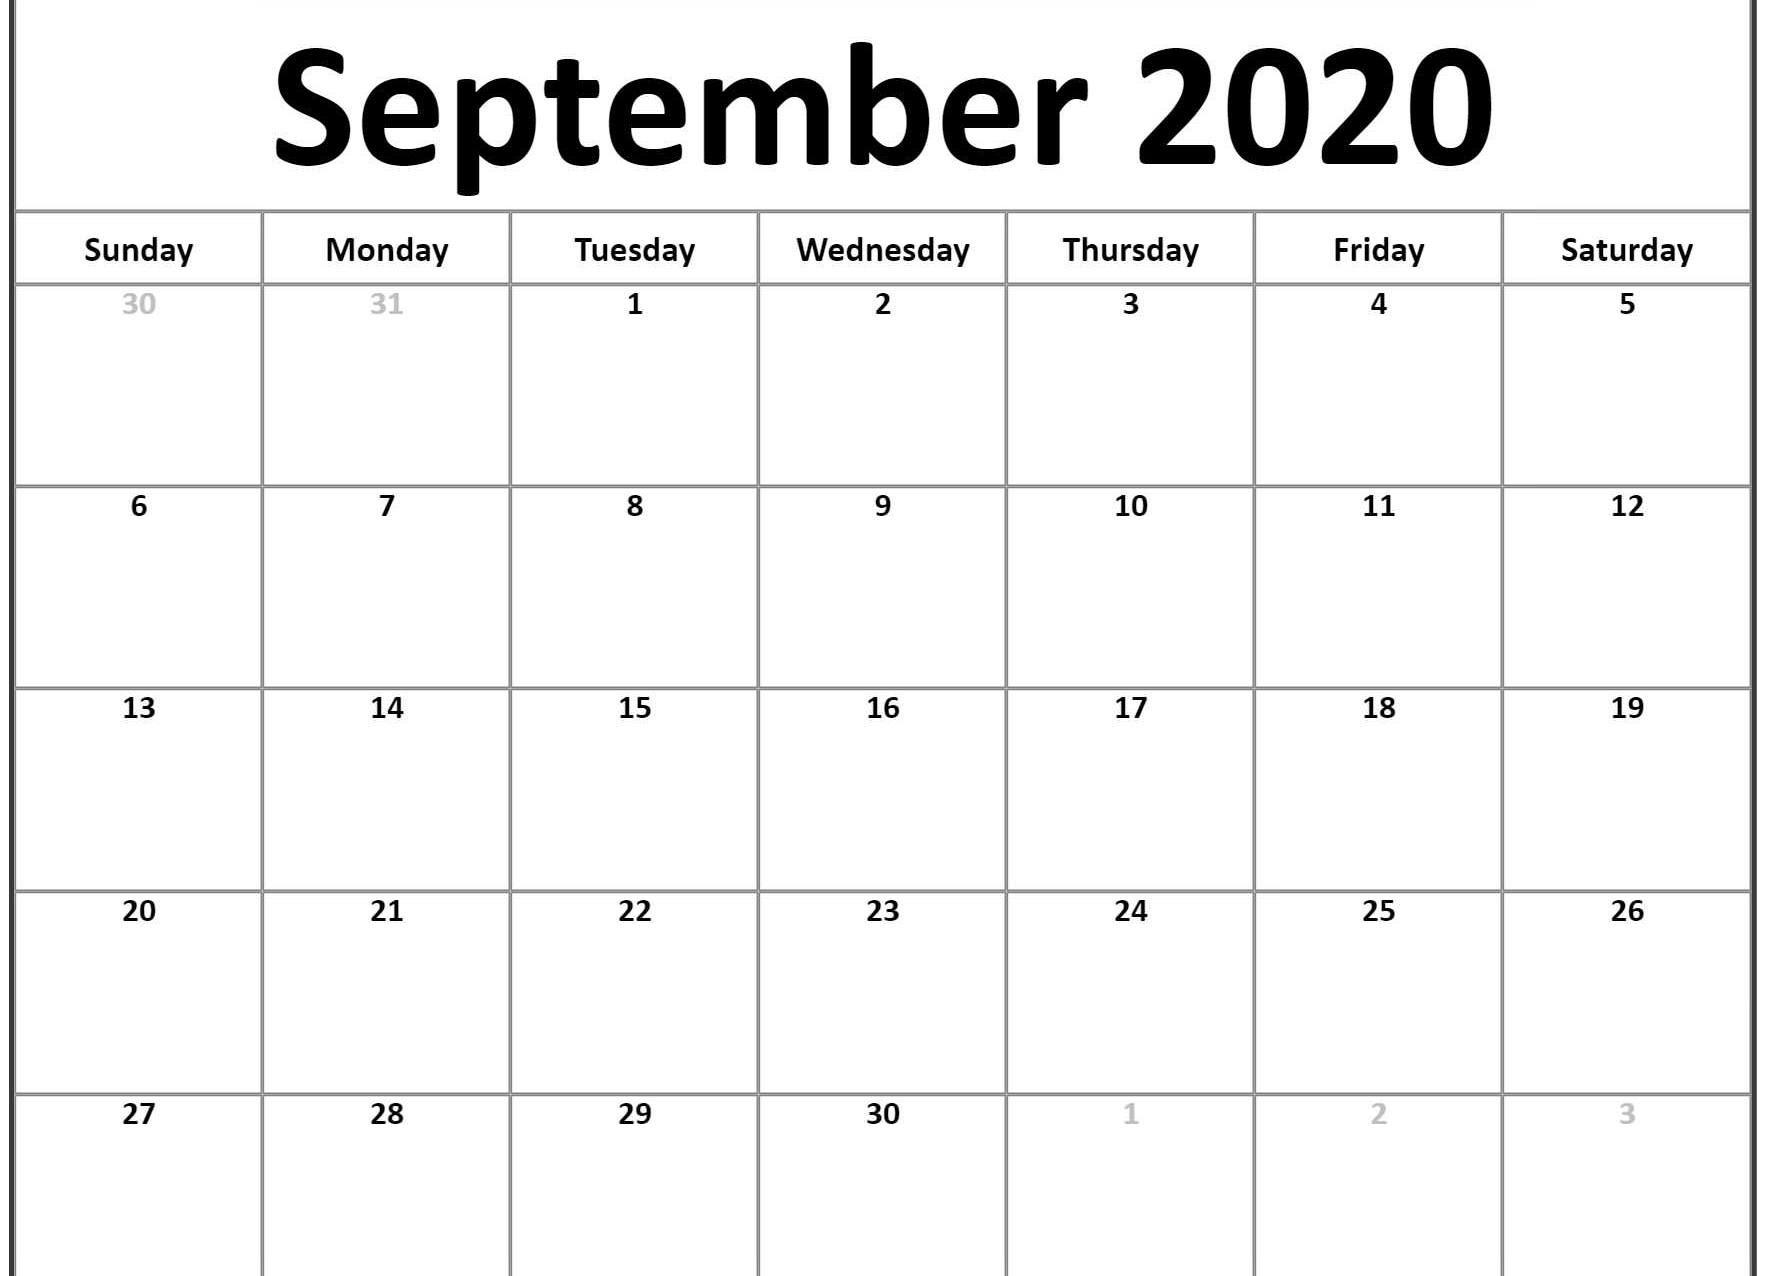 September 2020 Calendar Wallpaper Free September 2020